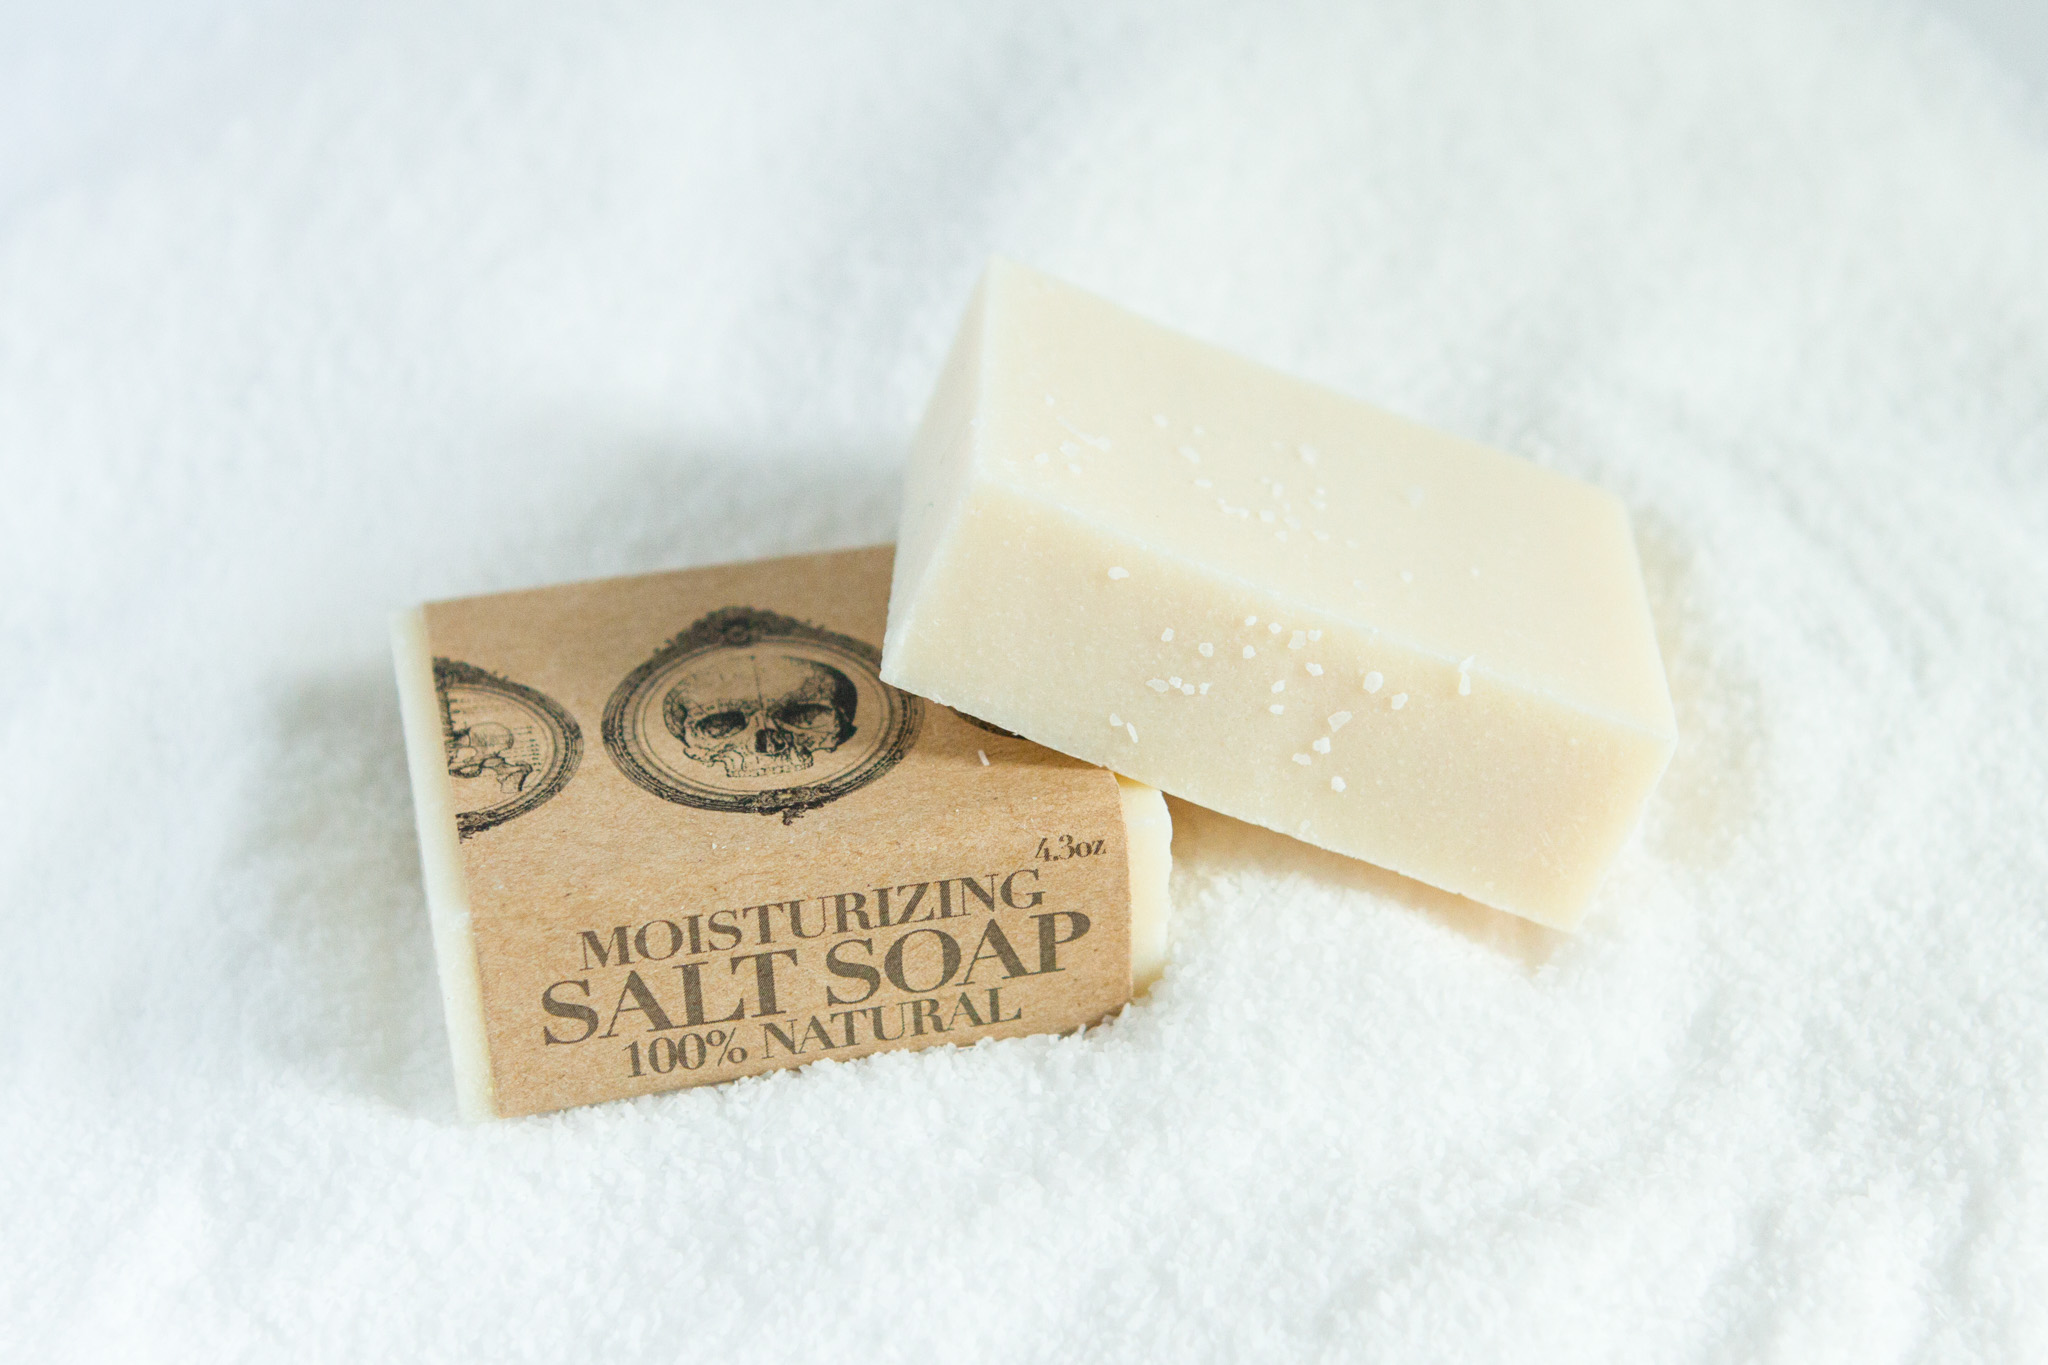  Salt soap for Rebels Refinery 